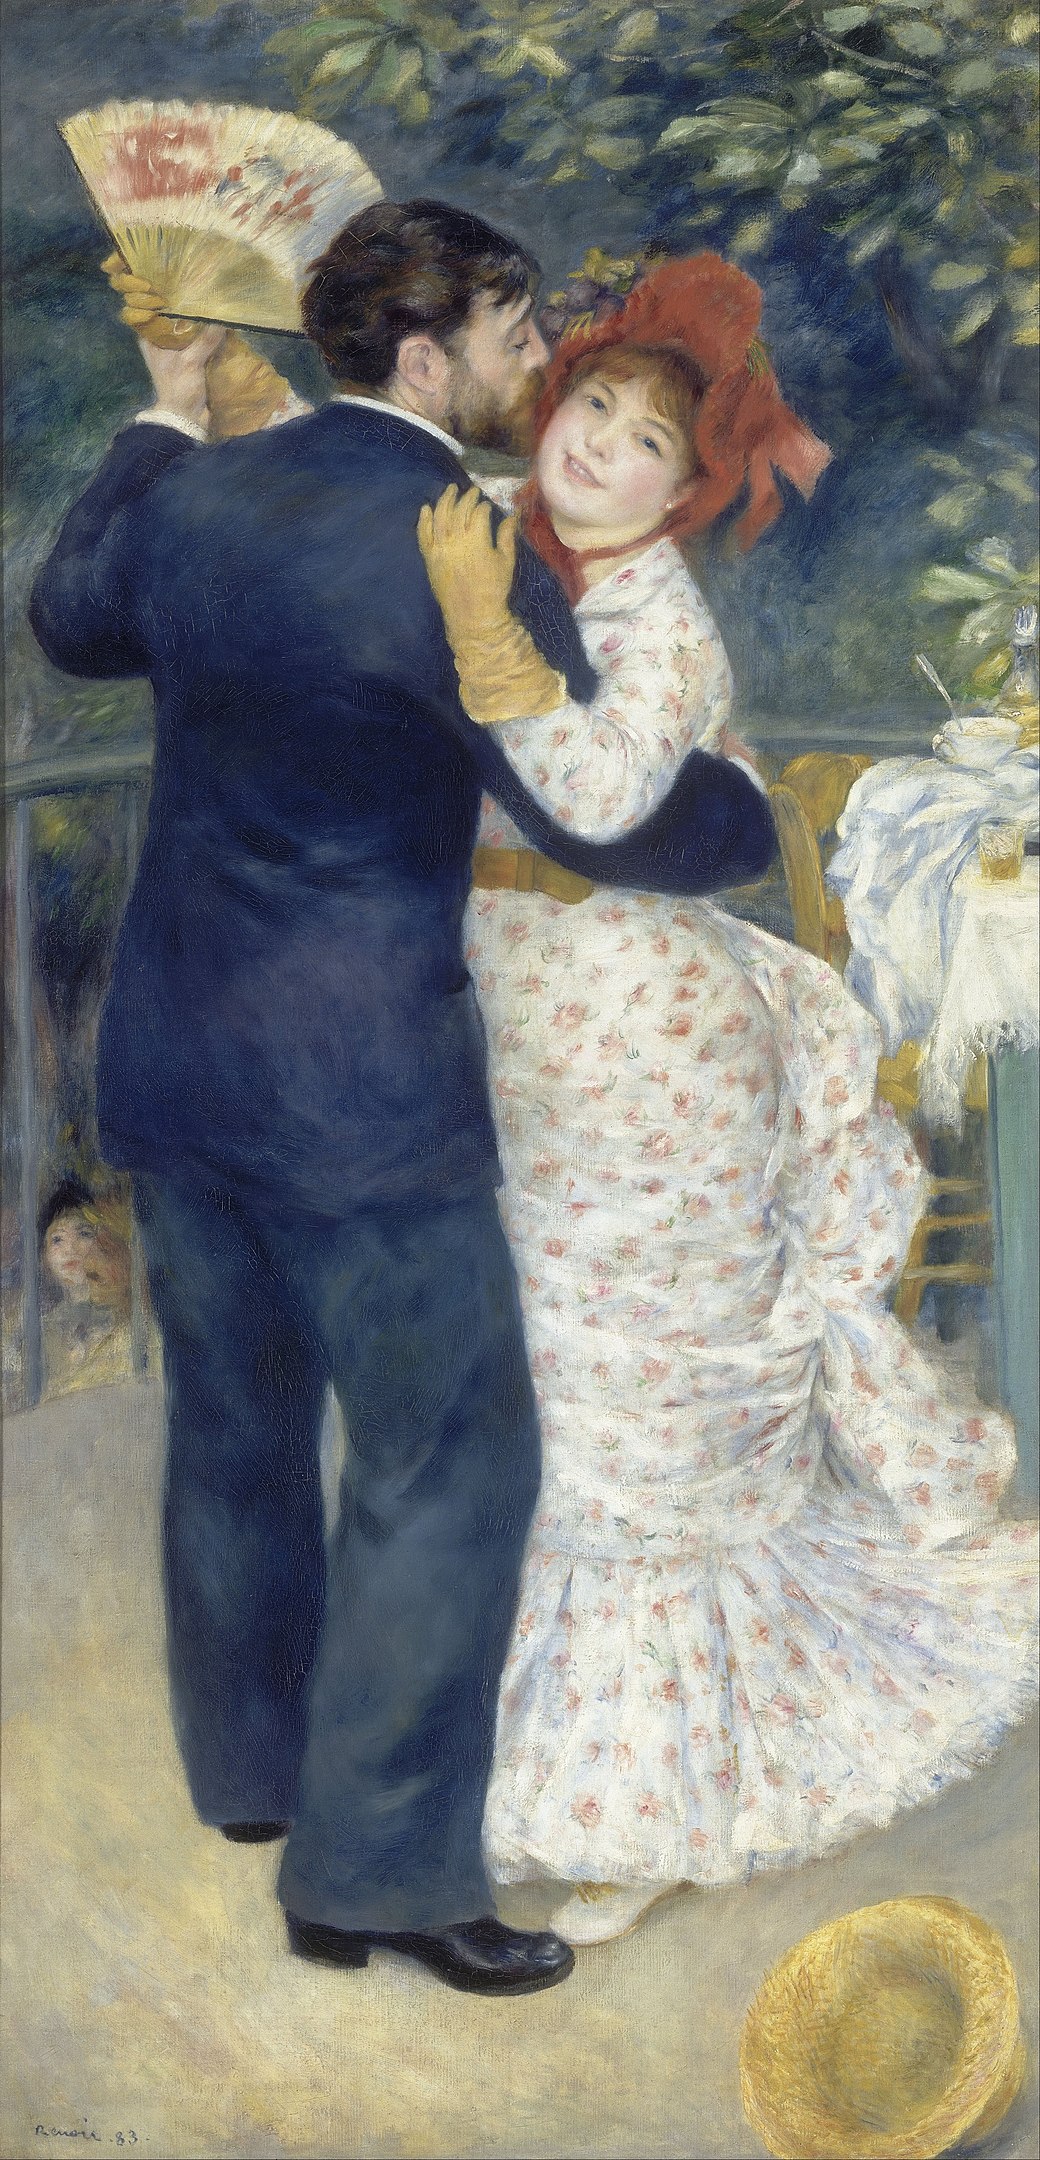 Ballo in città by Pierre-Auguste Renoir - 1883 - 180 x 90 cm Musée d'Orsay